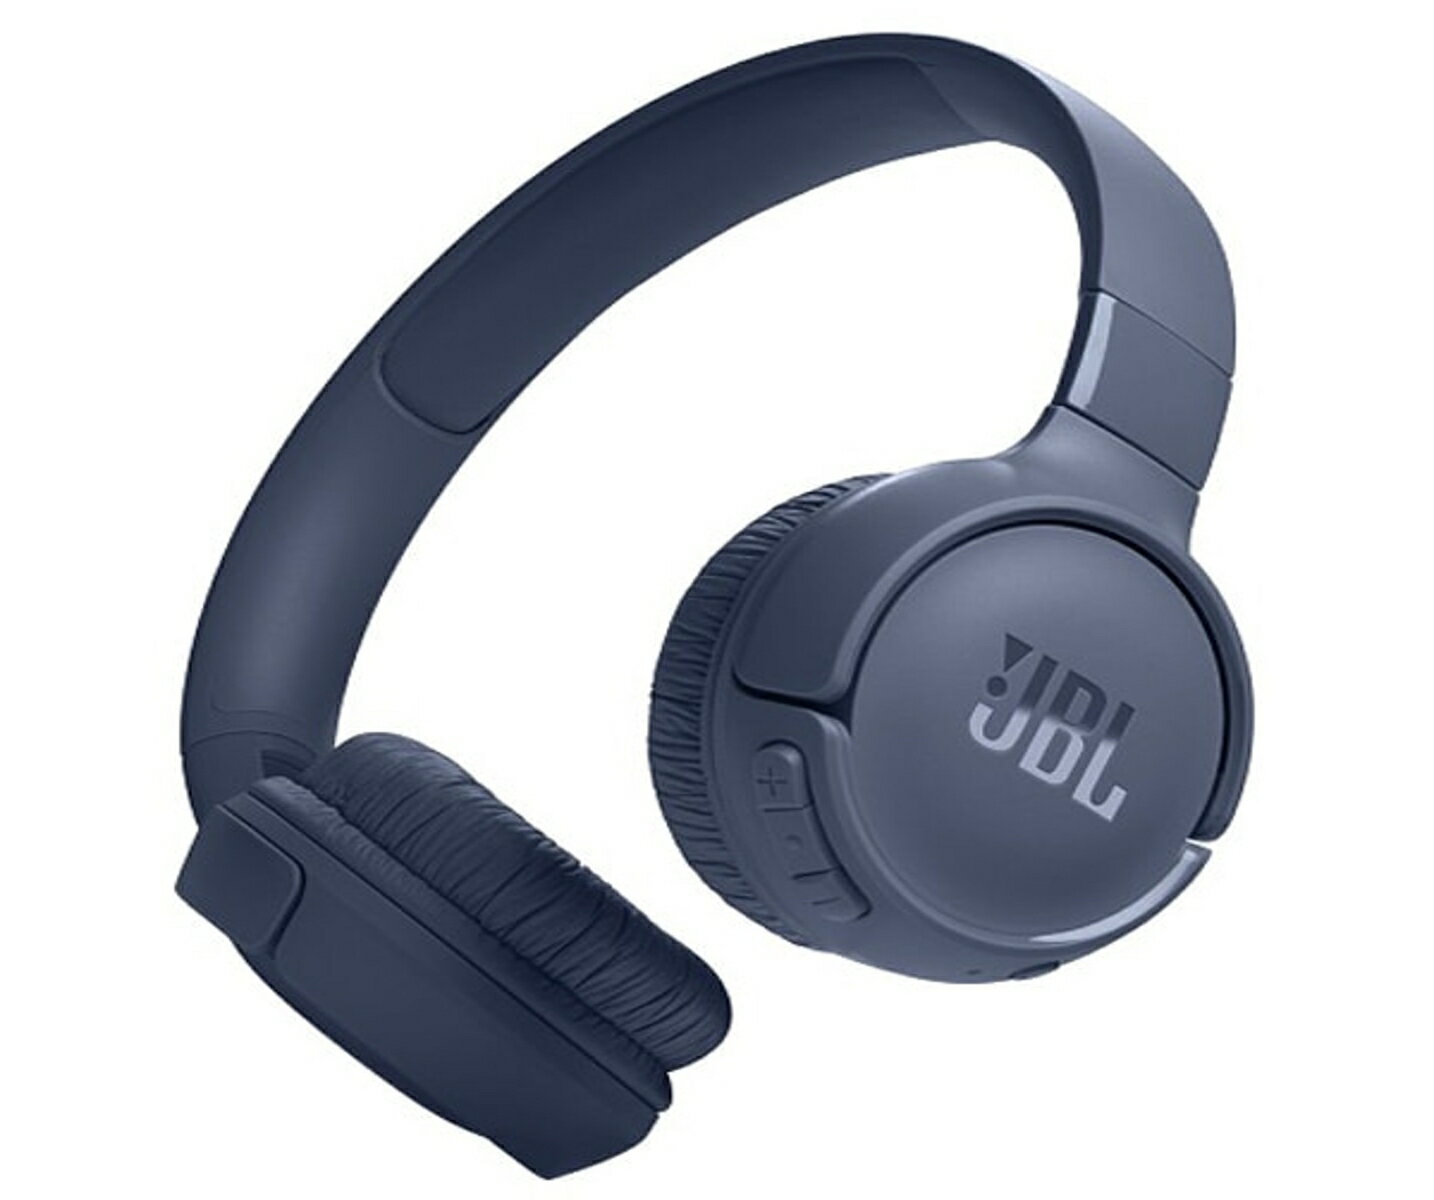 JBL Pure Bass サウンドを再現するワイヤレスオンイヤーヘッドホン

最新のBluetooth 5.3に対応。
パワフルな JBL Pure Bass サウンドを長時間連続で再生可能です。
最大約57時間の再生時間を実現しました。
5分間の充電でさらに3時間分の再生が可能です。

無償 JBL Headphones アプリをダウンロードし、EQを使ってサウンドをパーソナライズできます。
音声プロンプトは複数言語に対応。

イヤーカップのボタンで、通話、音声、音量を簡単に操作できます。

他のデバイスで動画を見ている時に電話がかかってきた場合は、スマートフォンにスムーズに切り替えられるため着信を逃すこともありません。

折りたたみ可能軽量設計により、長時間の音楽再生でも快適。
持ち運びも簡単です。


■主な特徴
・JBL Pure Bass サウンド
JBL Tune 520BT は、世界的に有名な会場の多くが採用し、高い評価を受けている JBL Pure Bass サウンドを再現します。

・Bluetooth 5.3対応
最新の Bluetooth テクノロジーにより、煩わしいコード不要のワイヤレス接続でスマートフォンから高品質サウンドをストリーミングできます。

・サウンドをパーソナライズ
無償 JBL Headphones アプリをダウンロードし、EQを使ってサウンドをパーソナライズする事ができます。
また、音声プロンプトは複数言語選択が可能です。